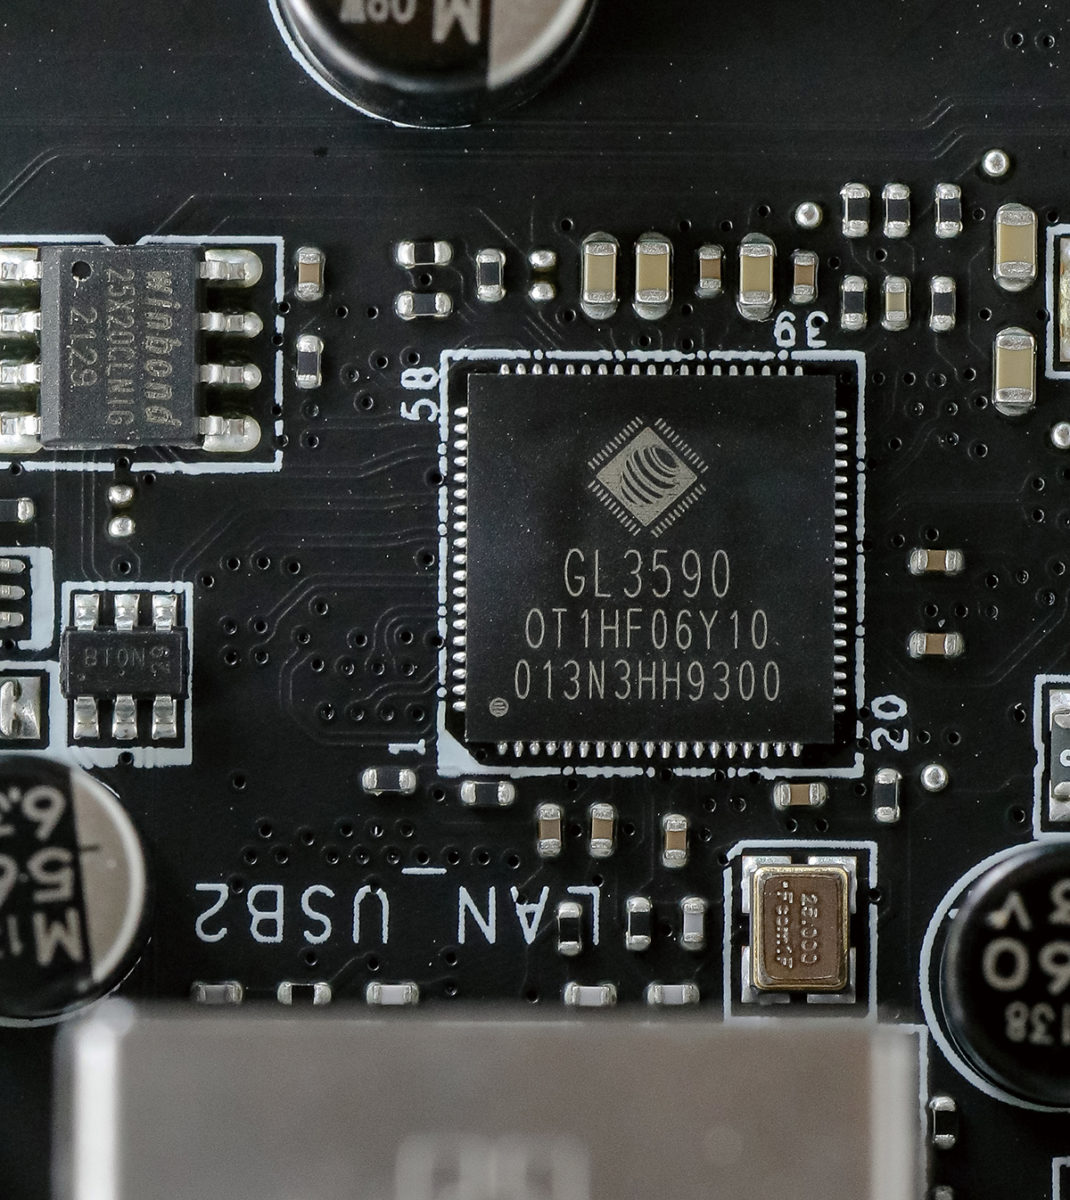 板上額外添加多組 Hub 晶片，圖為 GL3590 USB 3.2 Gen2 晶片。